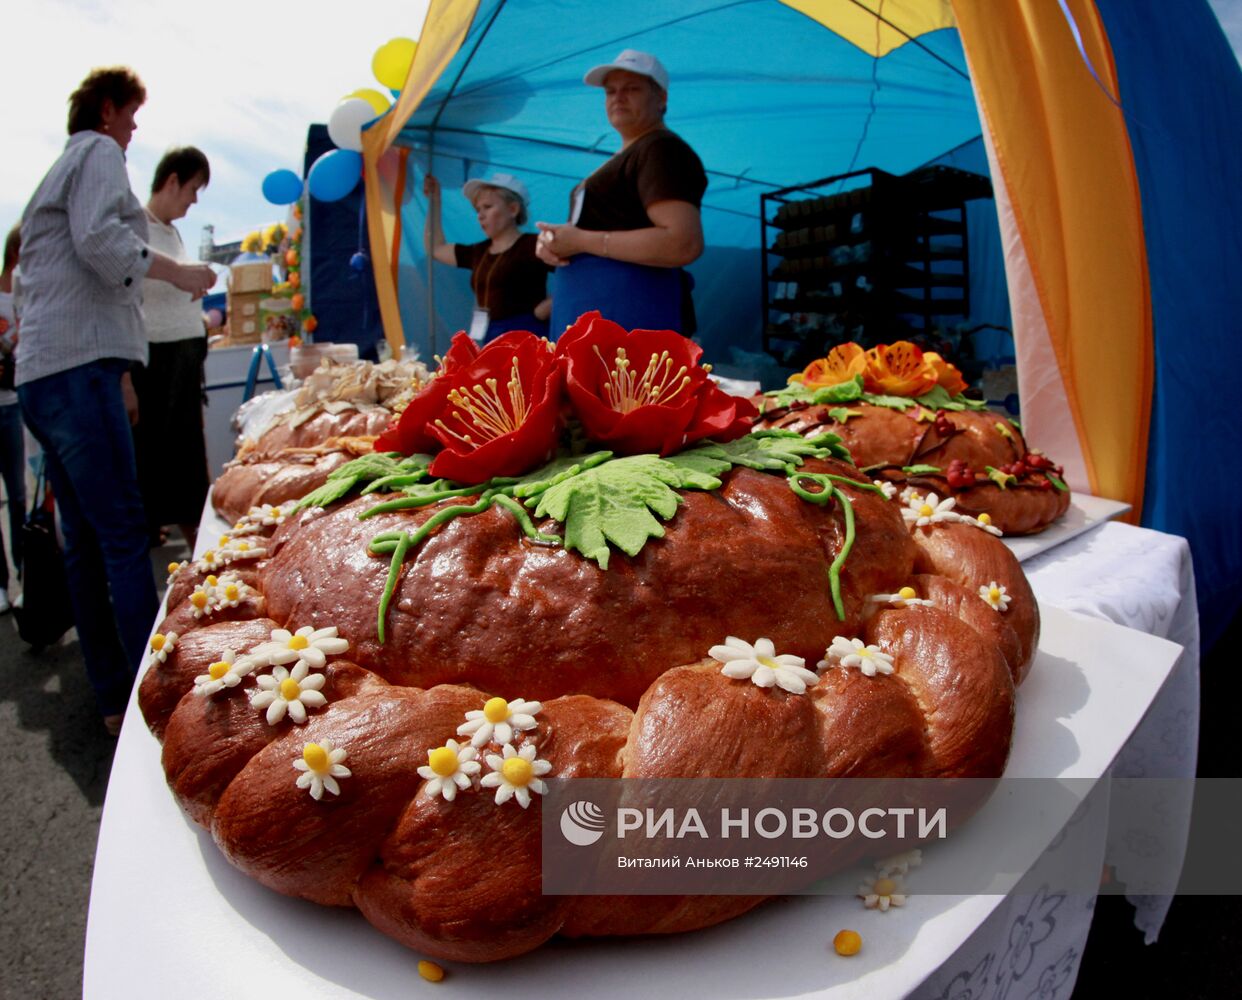 18-я выставка-ярмарка "Приморские продукты питания"